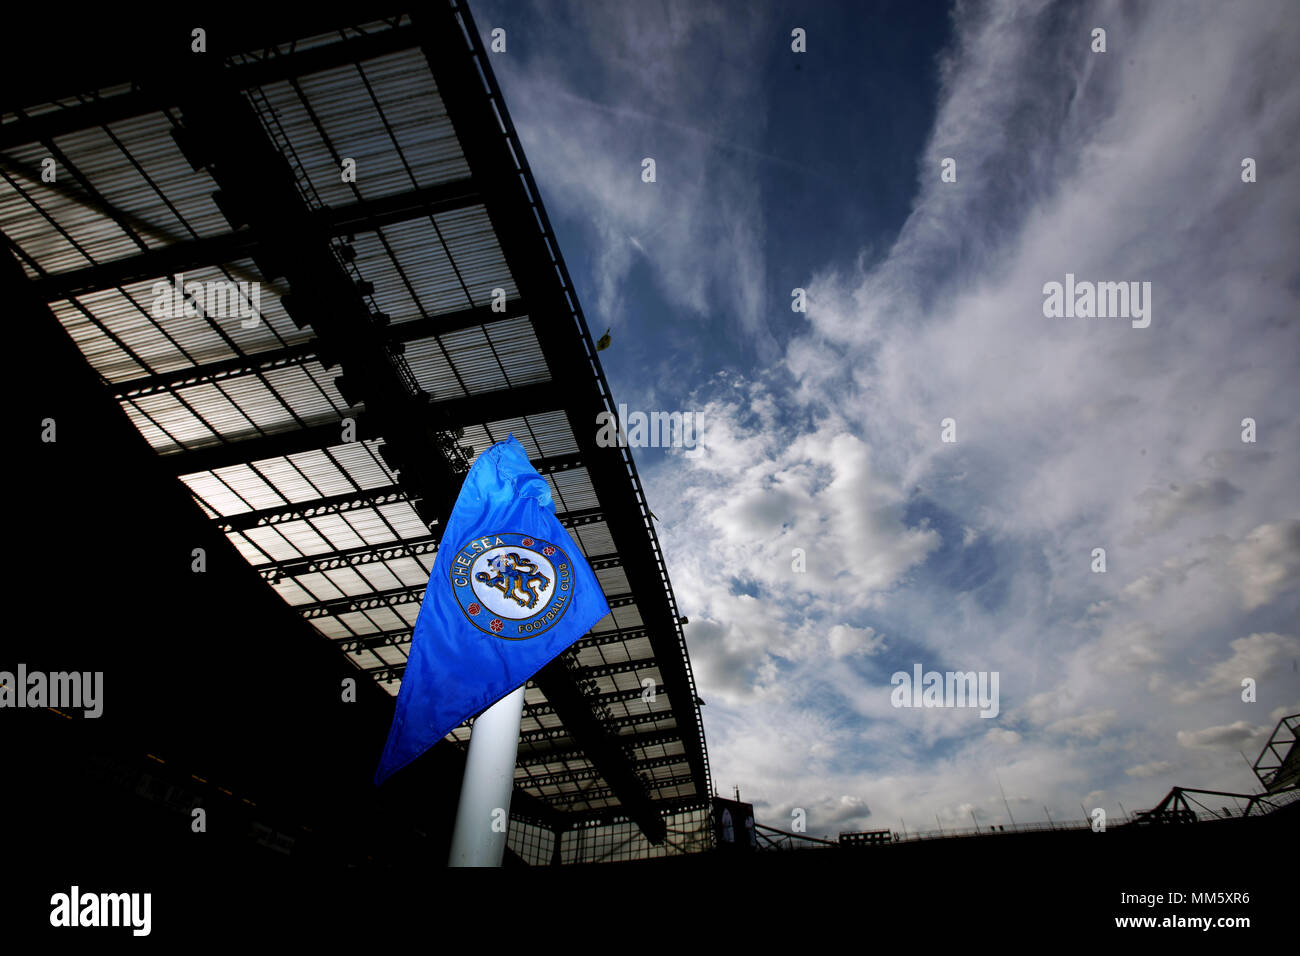 Allgemeine Ansicht eines Chelsea Ecke Flagge vor dem Spiel in der Premier League an der Stamford Bridge, London. Stockfoto